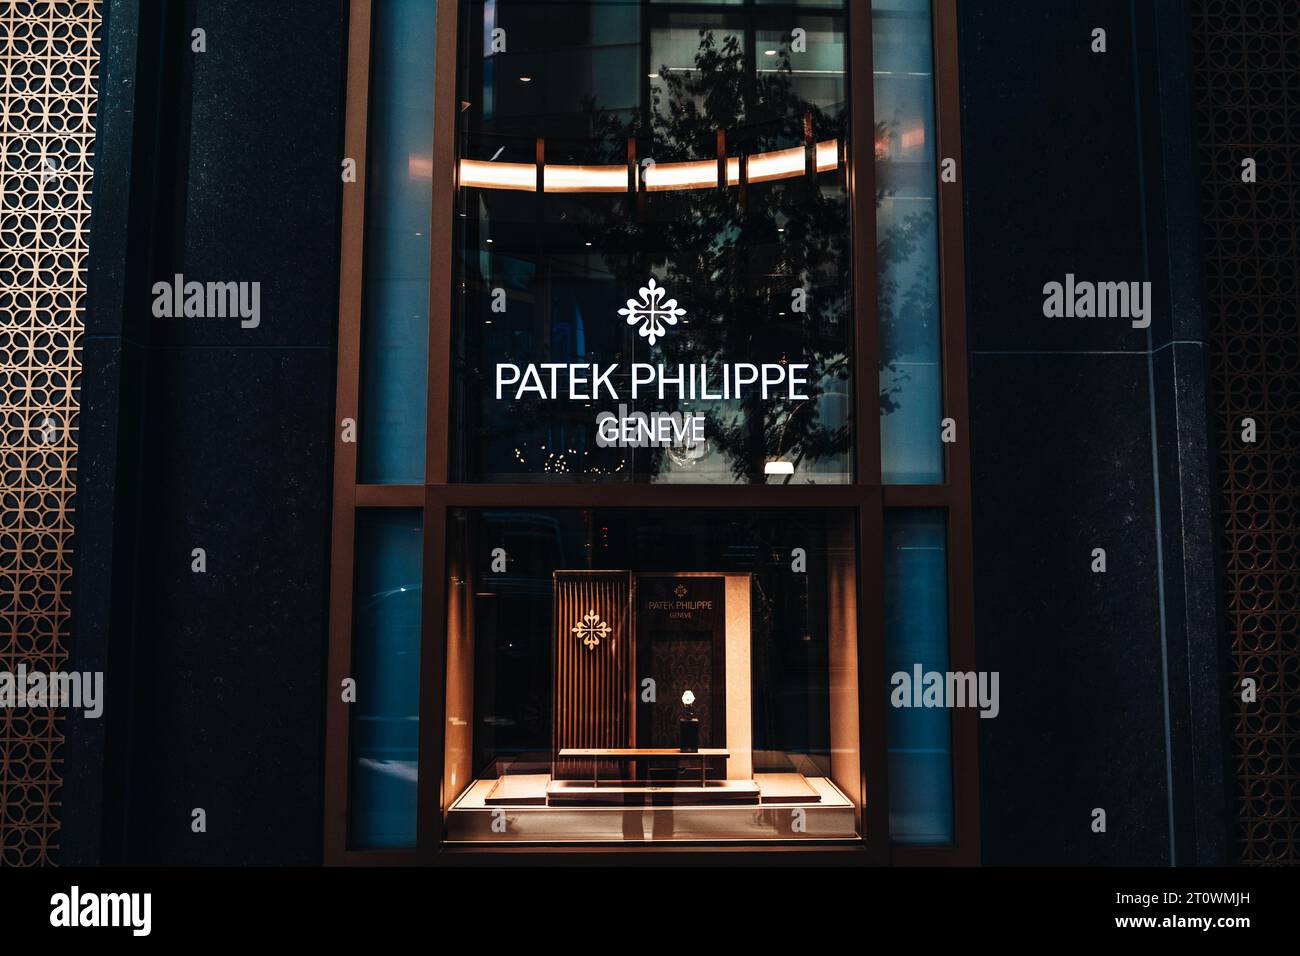 Affichage de magasin de la marque Patek Philippe à New York, États-Unis. C'est un fabricant suisse de montres de luxe fondé en 1839. Banque D'Images